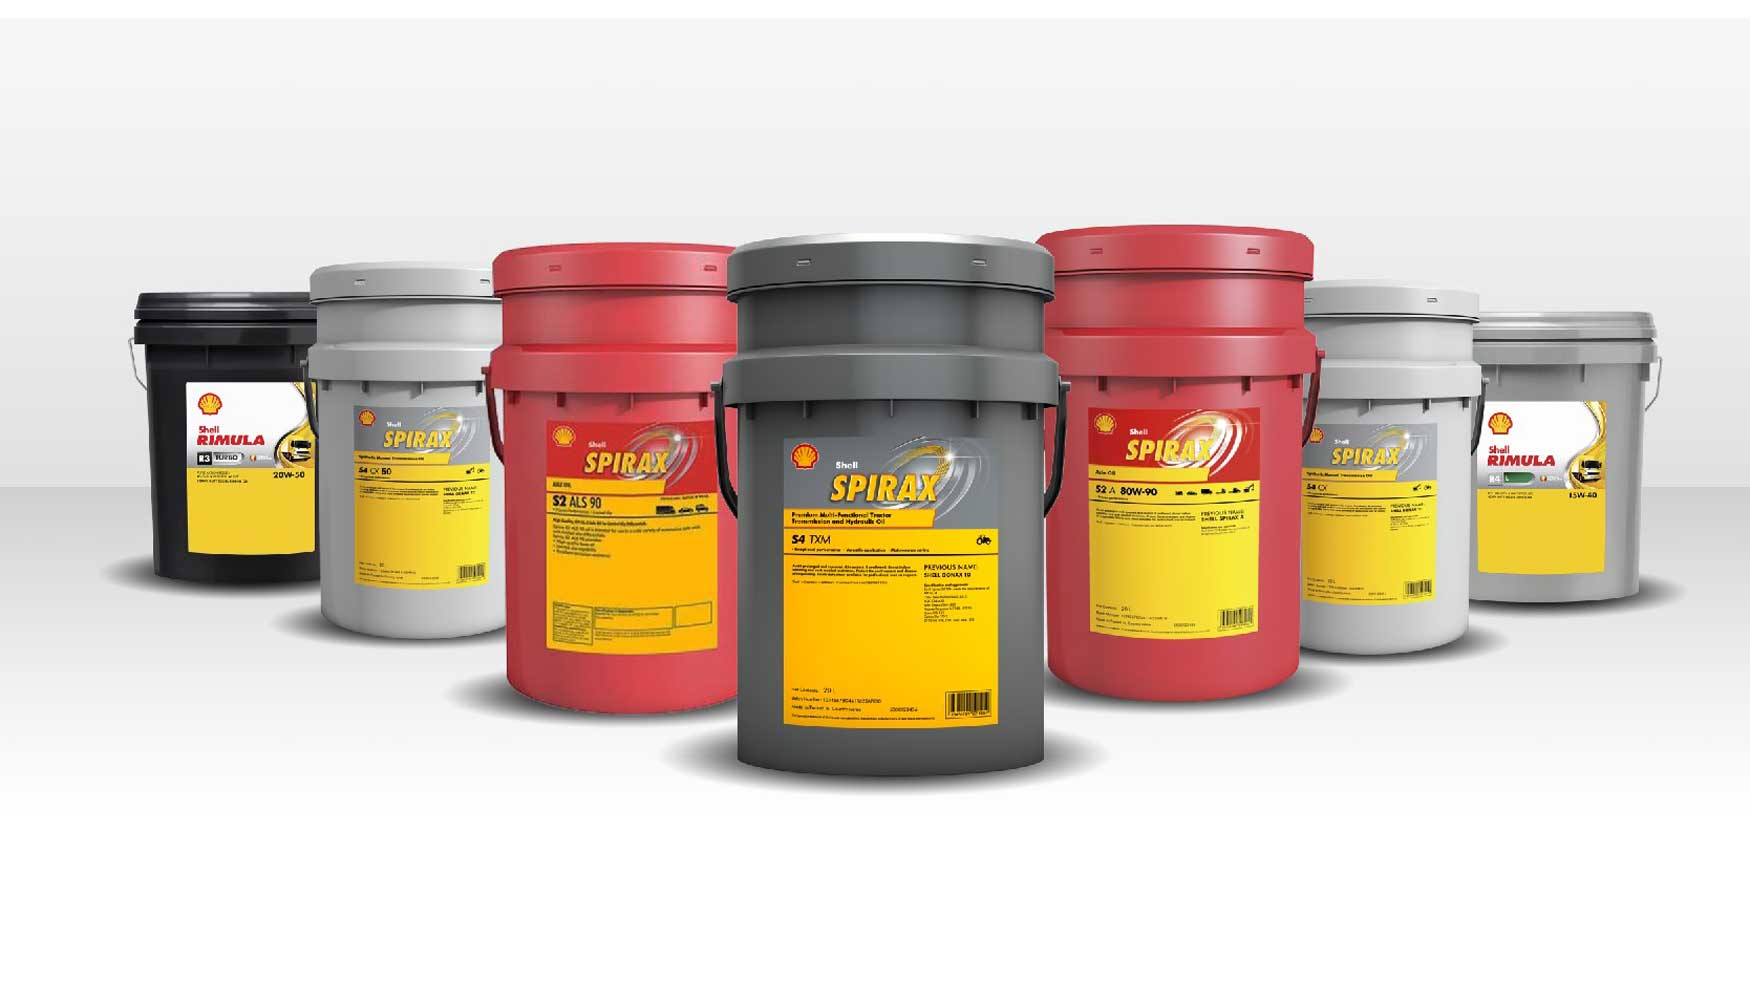 Shell atesora una completa gama de aceites y lubricantes para todo tipo de maquinaria